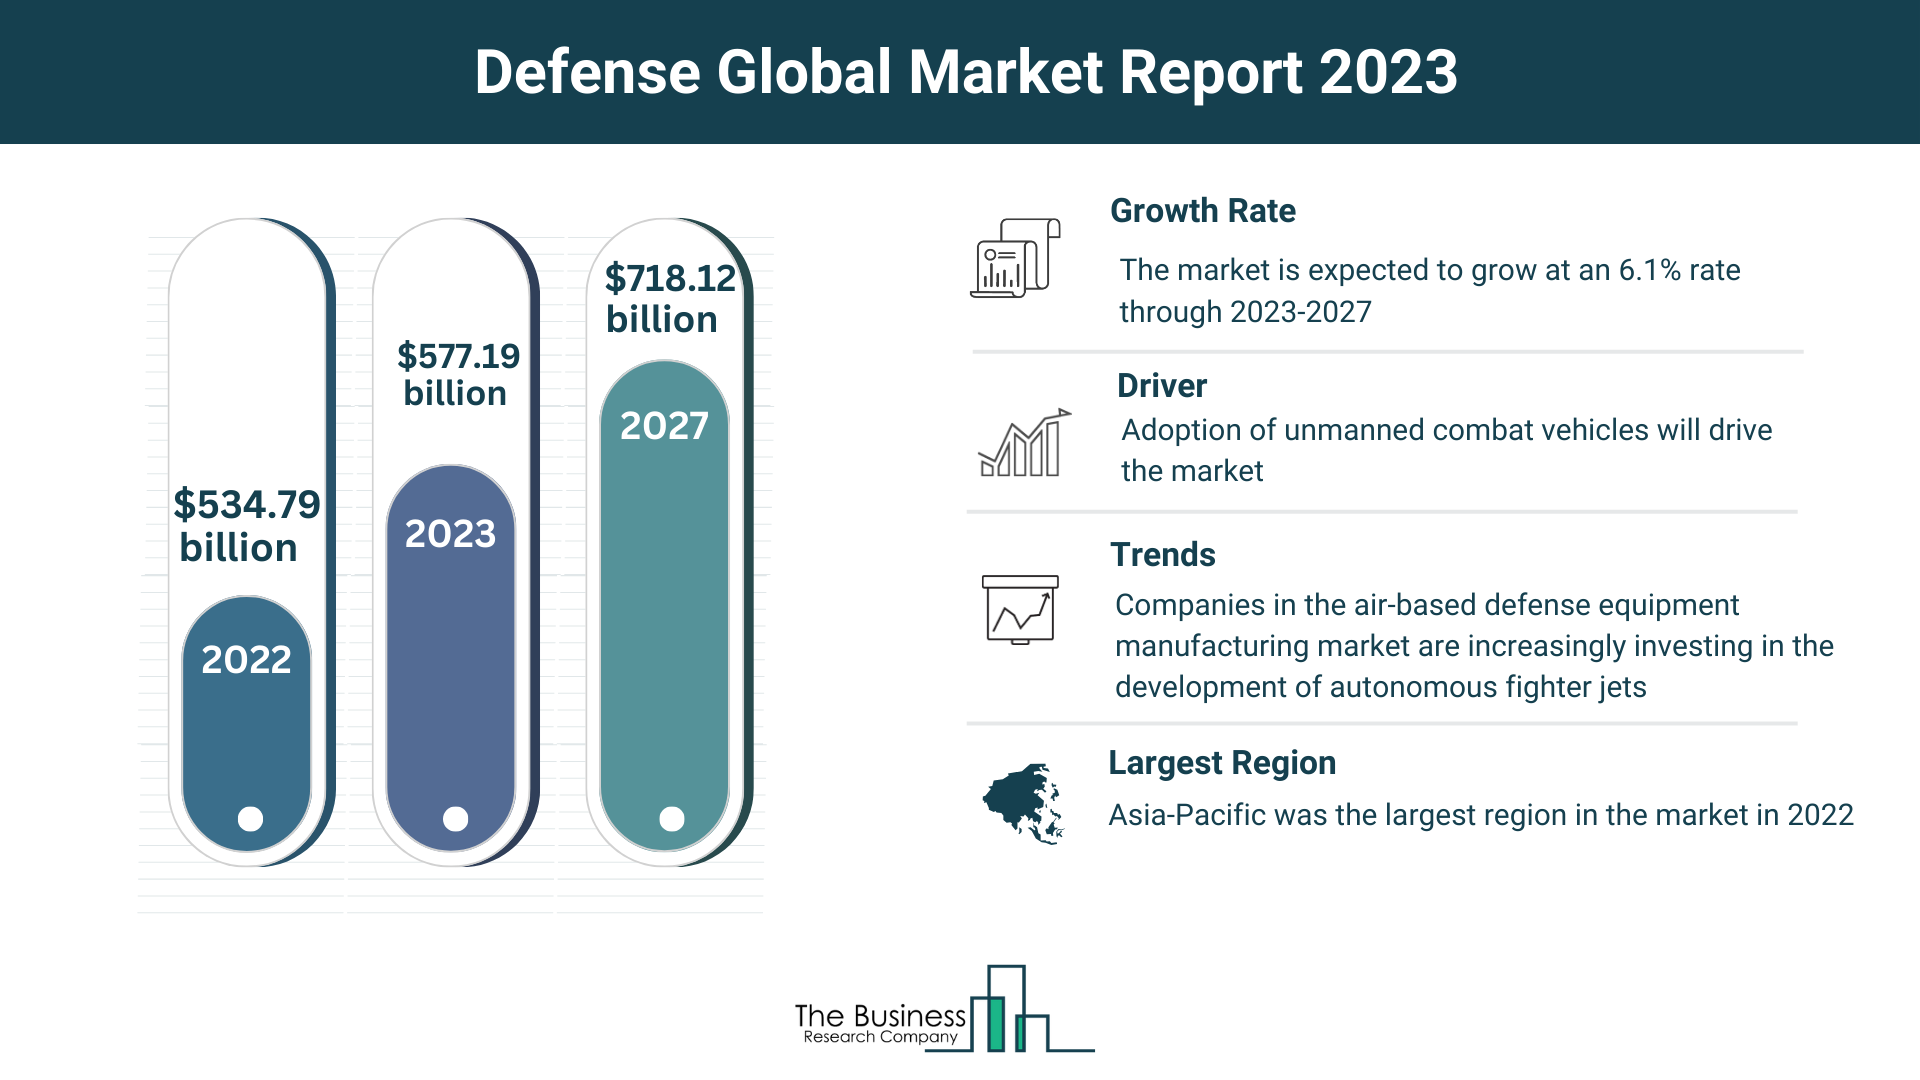 Global Defense Market Size